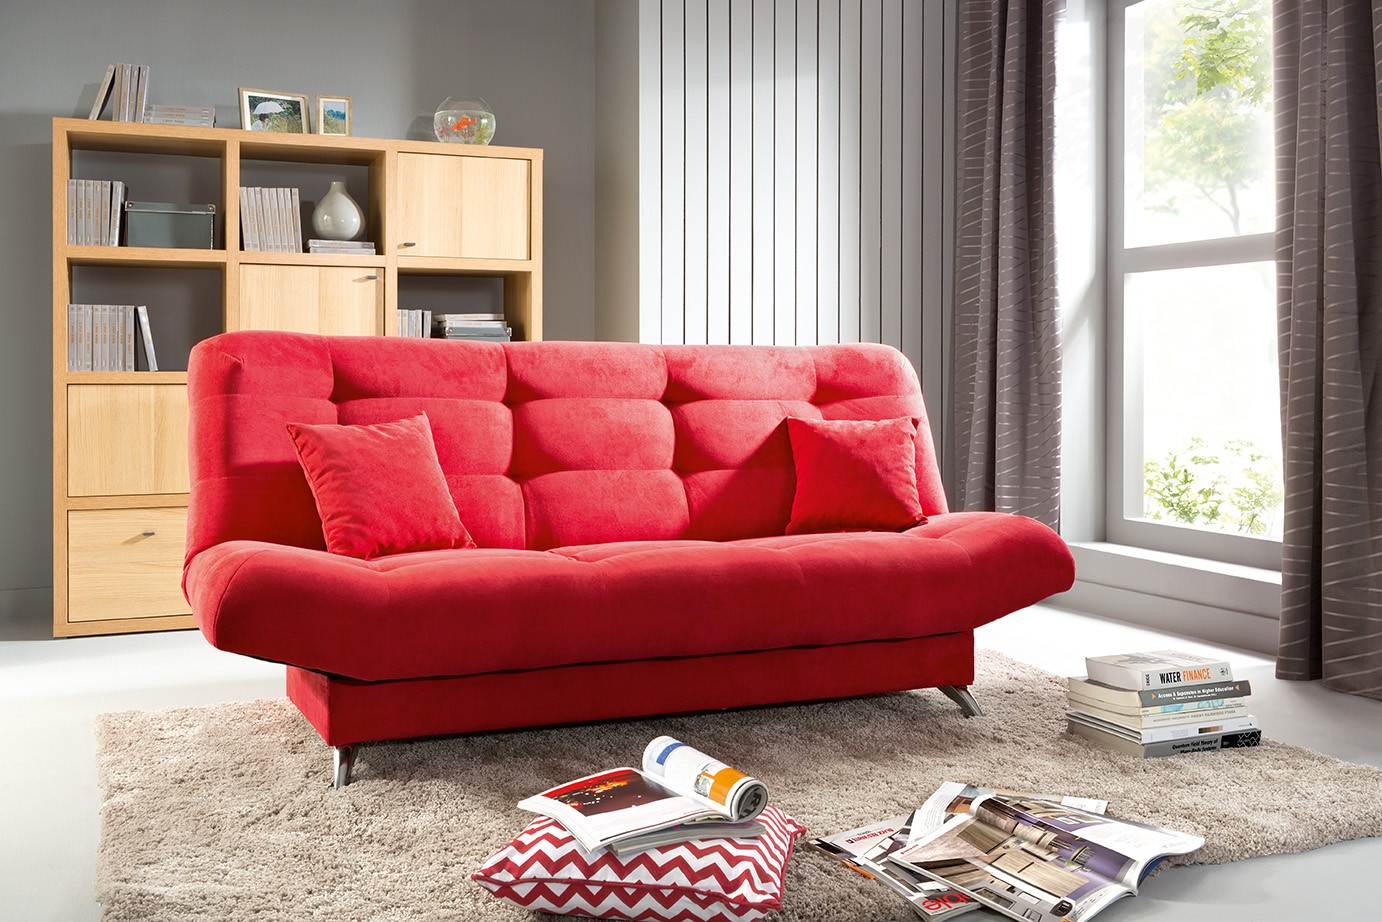 Ce tip de canapea sa alegi pentru spatiile mici?